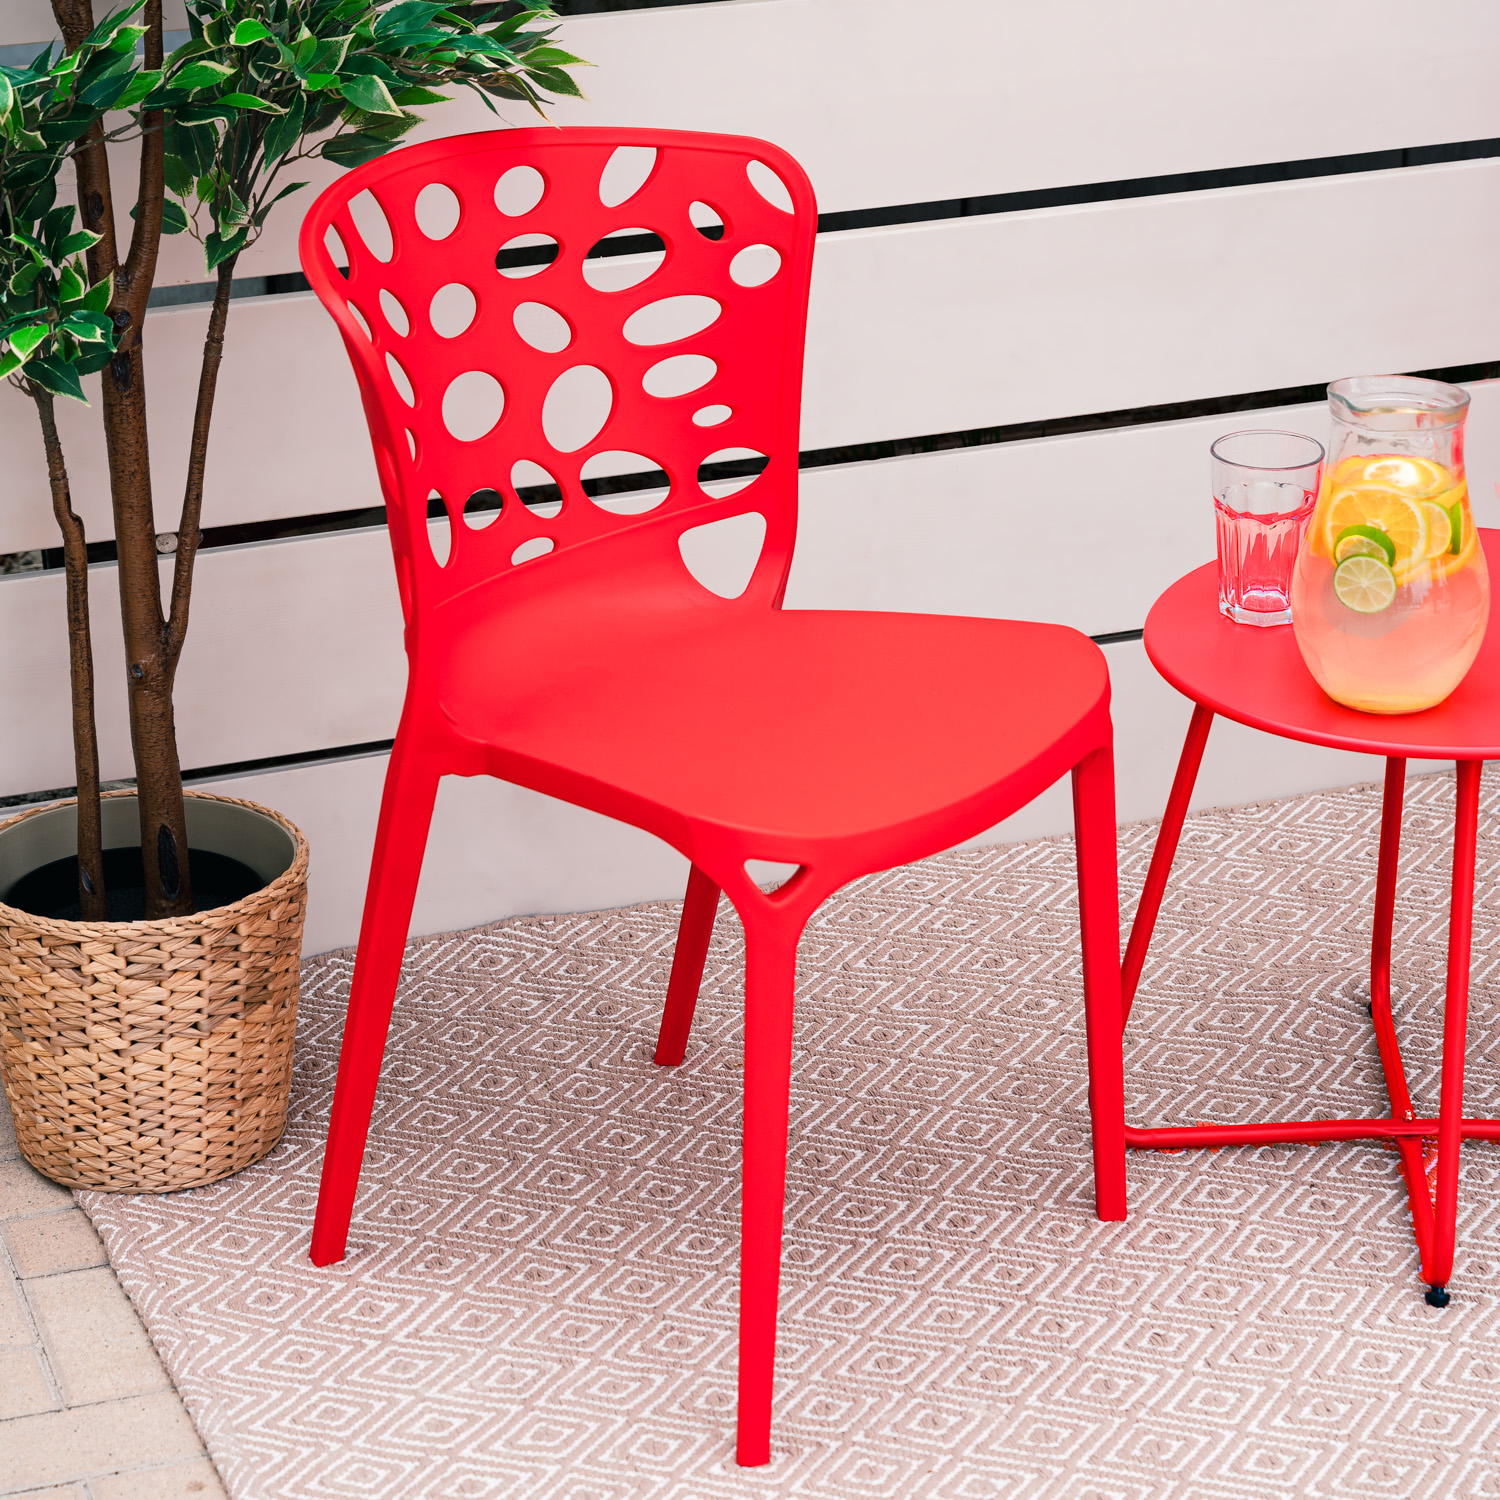 Chaise de jardin Lot de 2 Moderne Rouge Chaises design Plastique Chaises exterieur Chaises empilable Chaise de cuisine